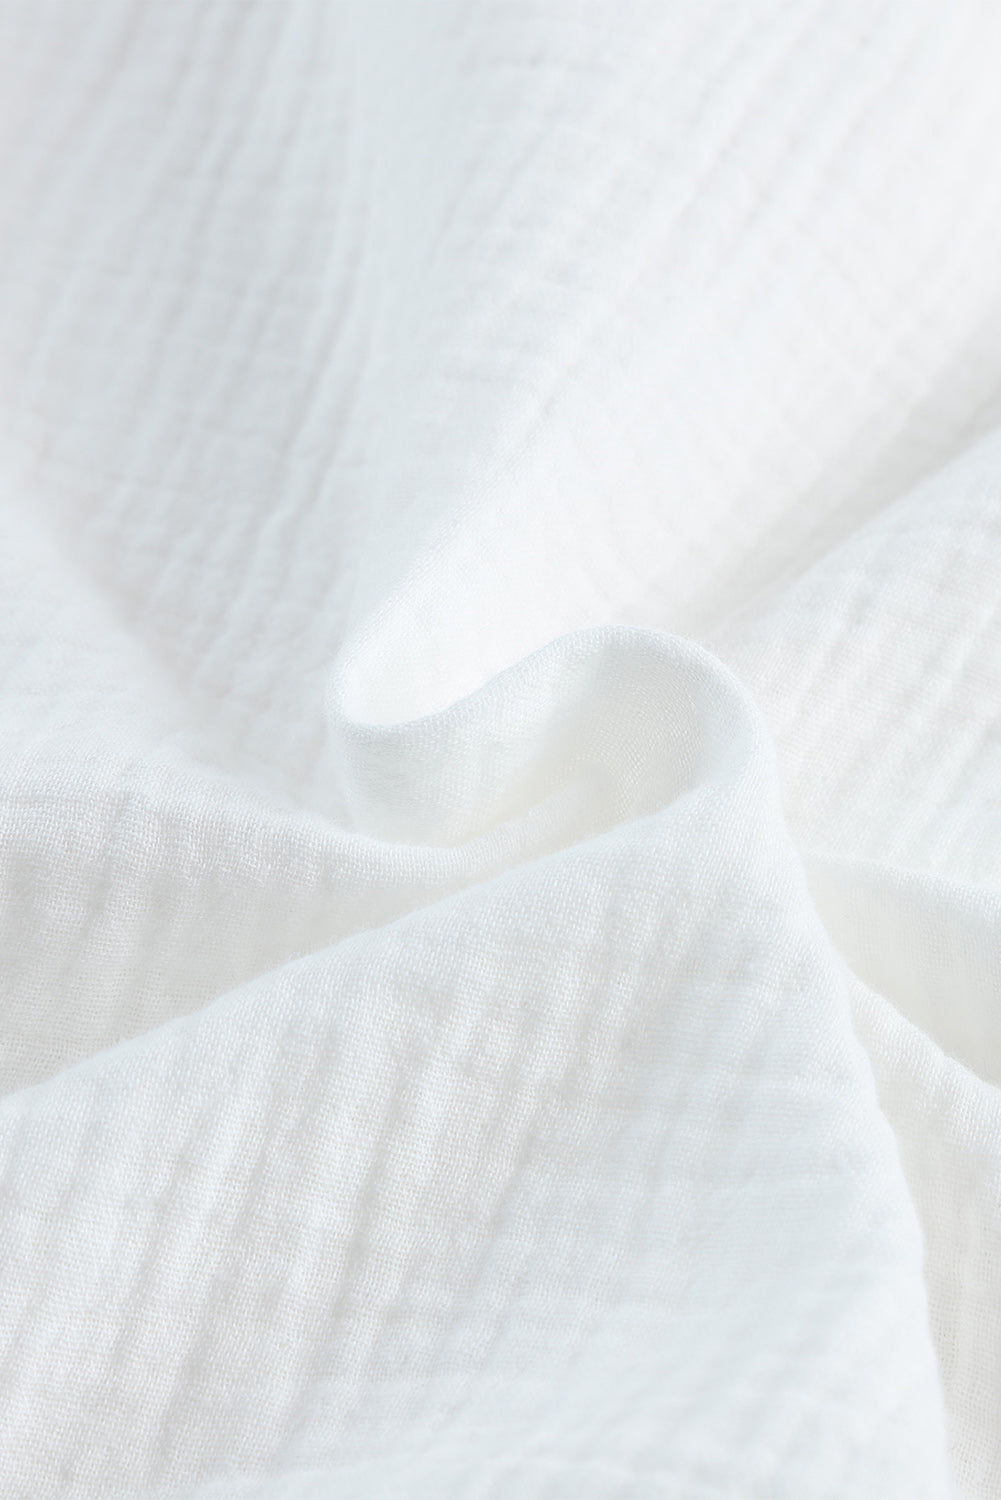 Chemise blanche texturée nouée boutonnée à demi-manches